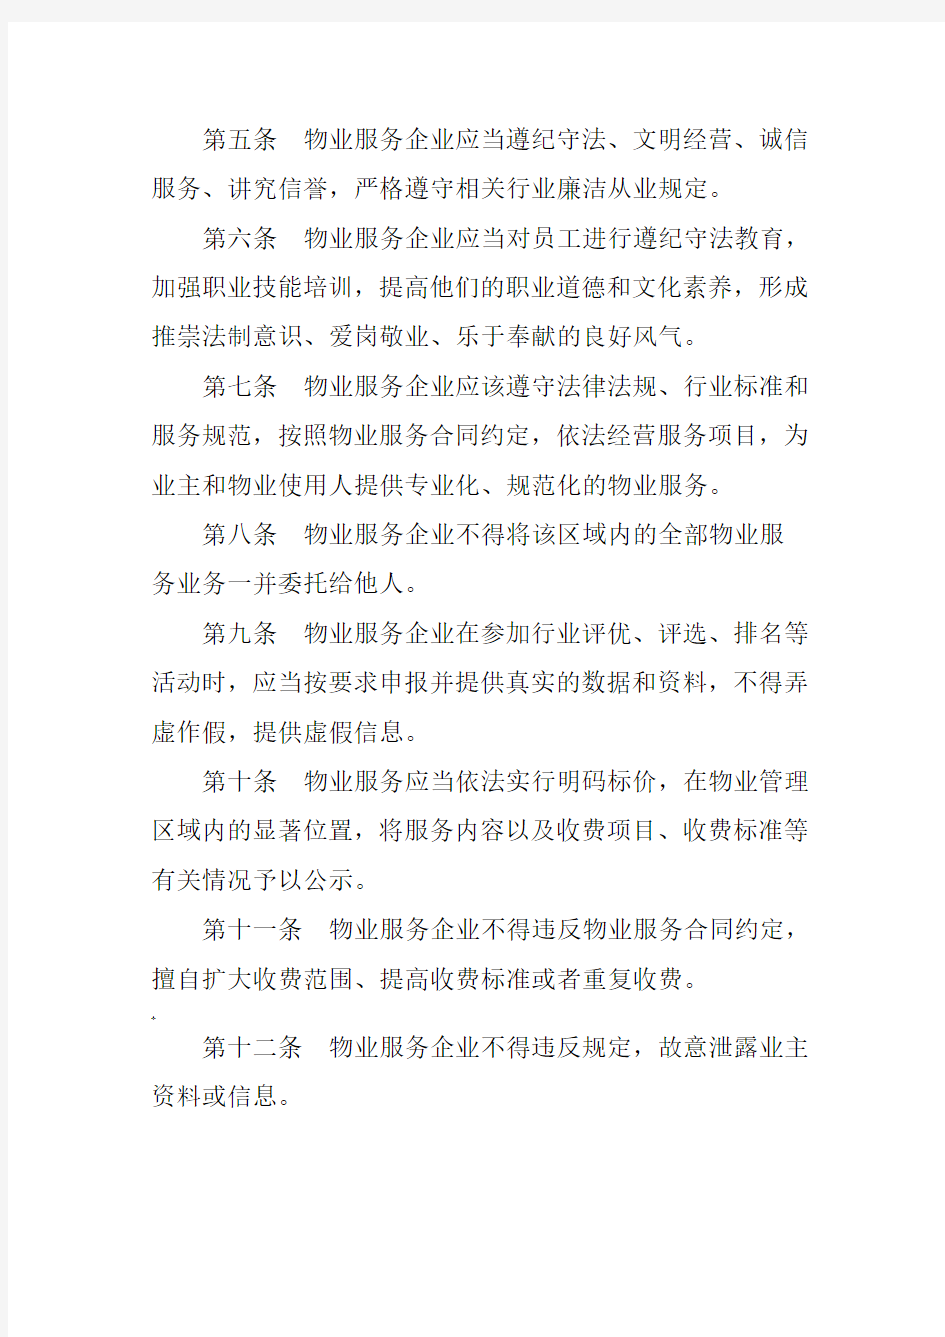 深圳市物业管理行业廉洁自律公约